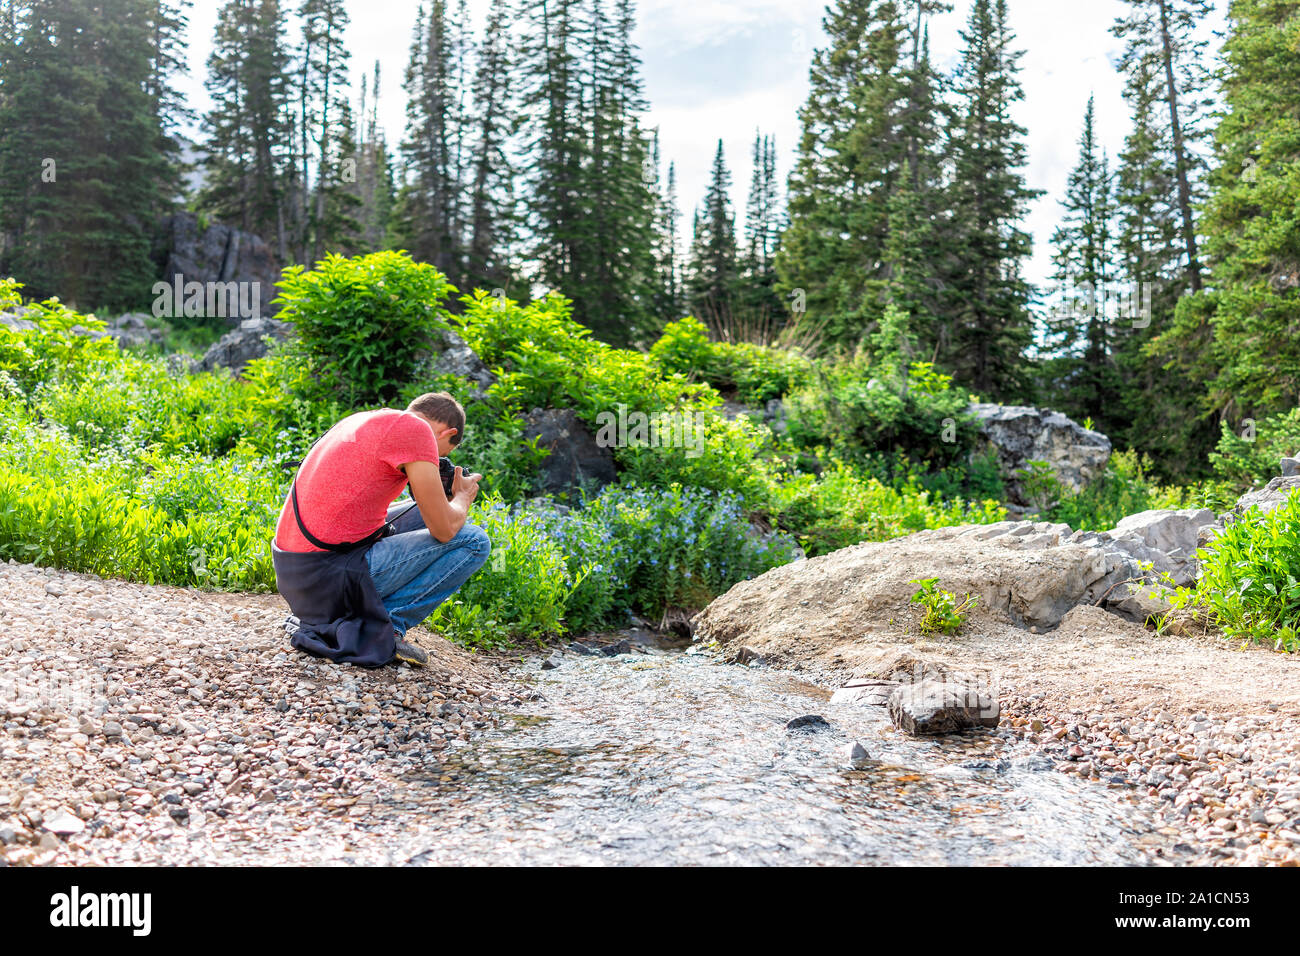 Albion, bassin d'été de l'Utah avec l'homme à prendre des photos de l'eau du ruisseau de la rivière dans les montagnes Wasatch sur Cecret Lake trail randonnée pédestre Banque D'Images